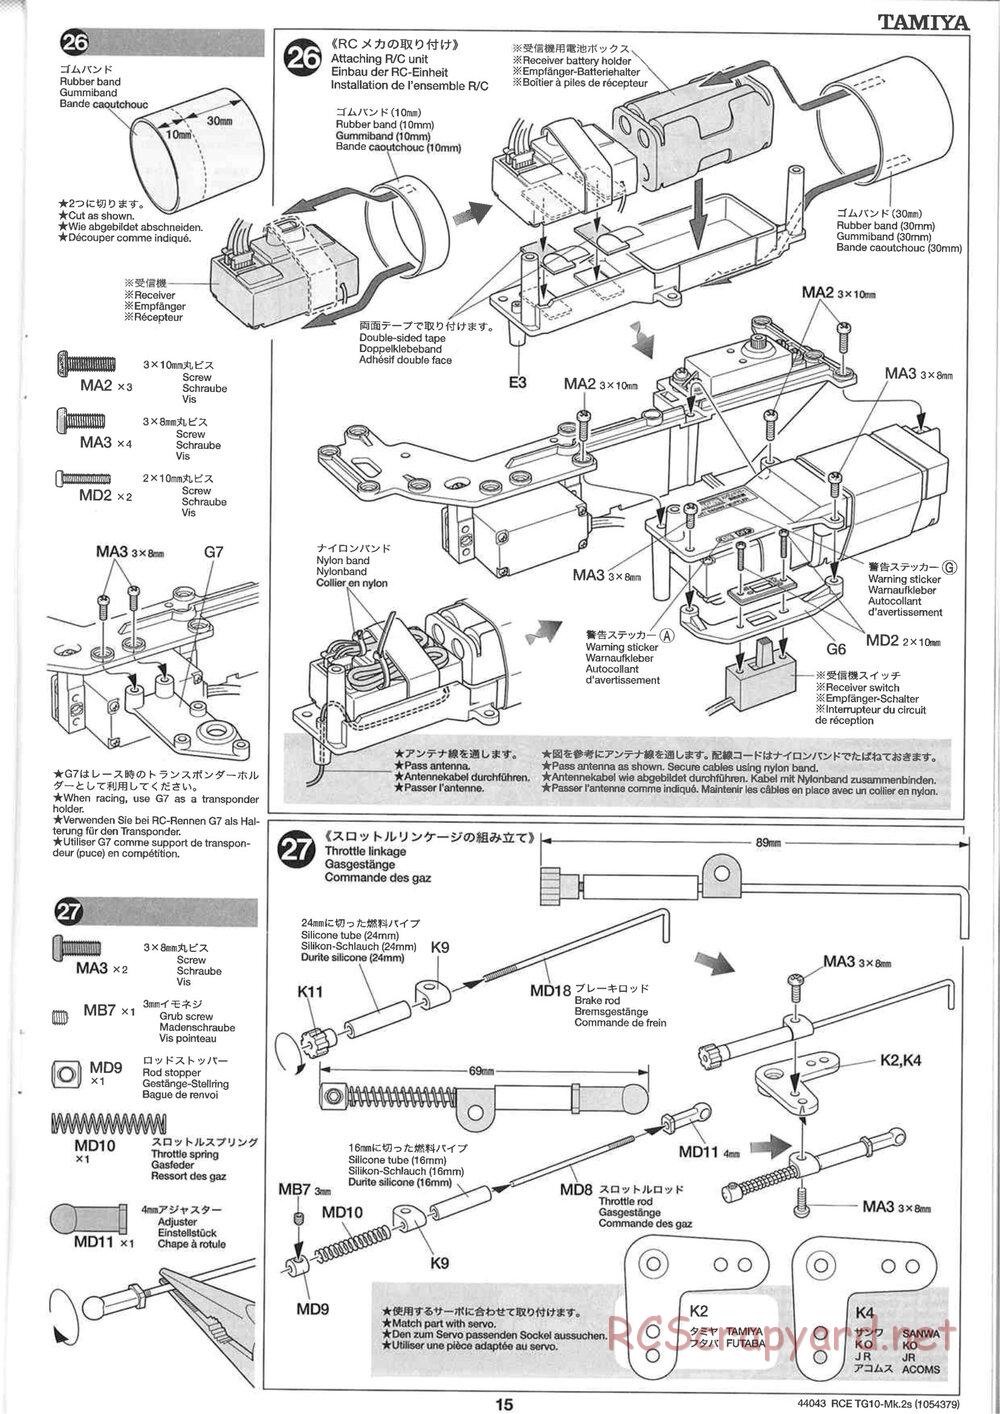 Tamiya - TG10 Mk.2s Chassis - Manual - Page 16